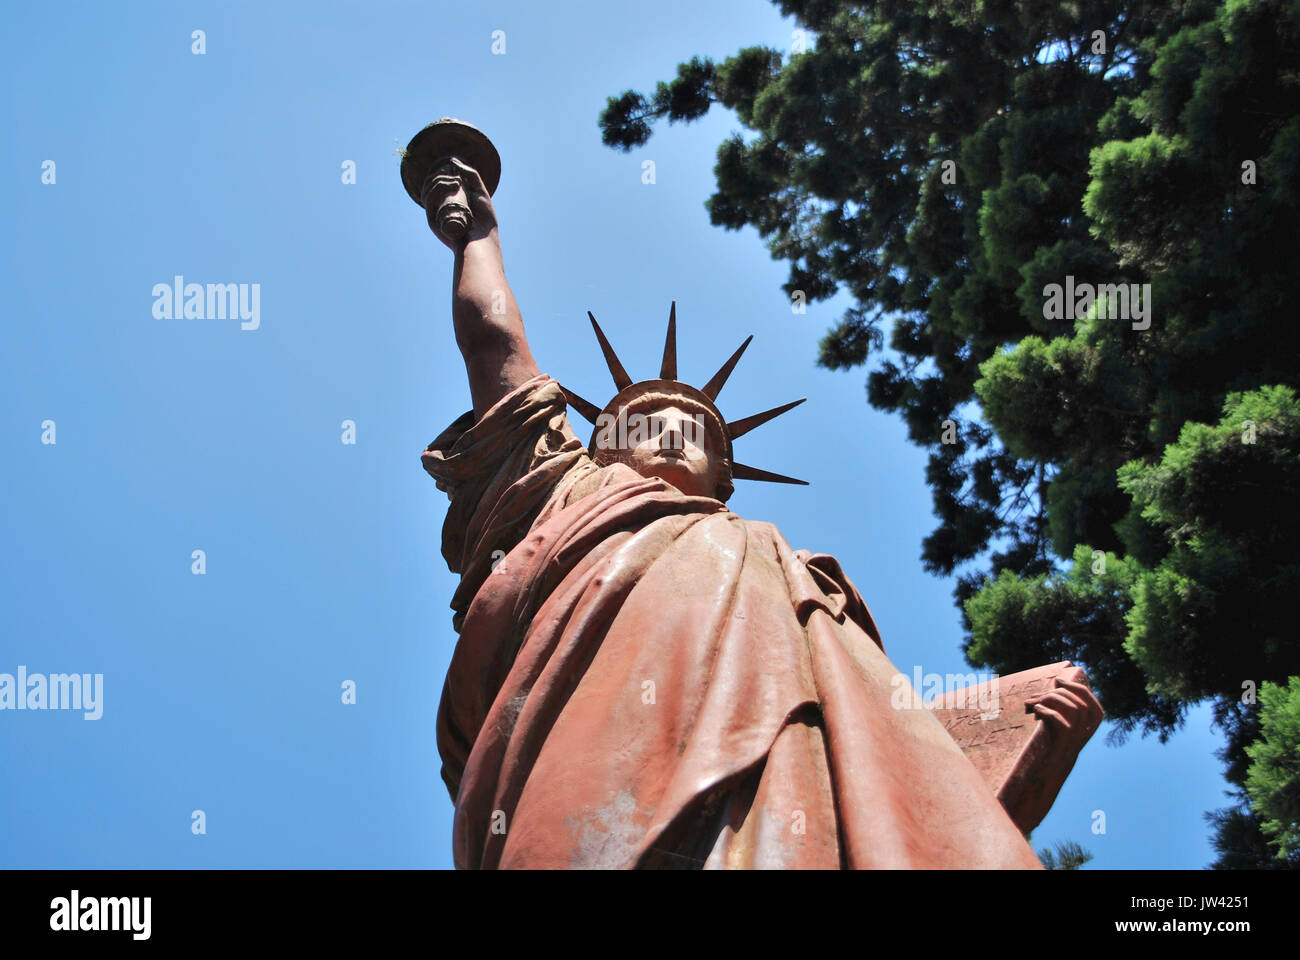 Marzo 2, 2015 - Buenos Aires/Argentina: copia de la estatua de la libertad en la plaza de Barrancas de Belgrano, parque público Foto de stock